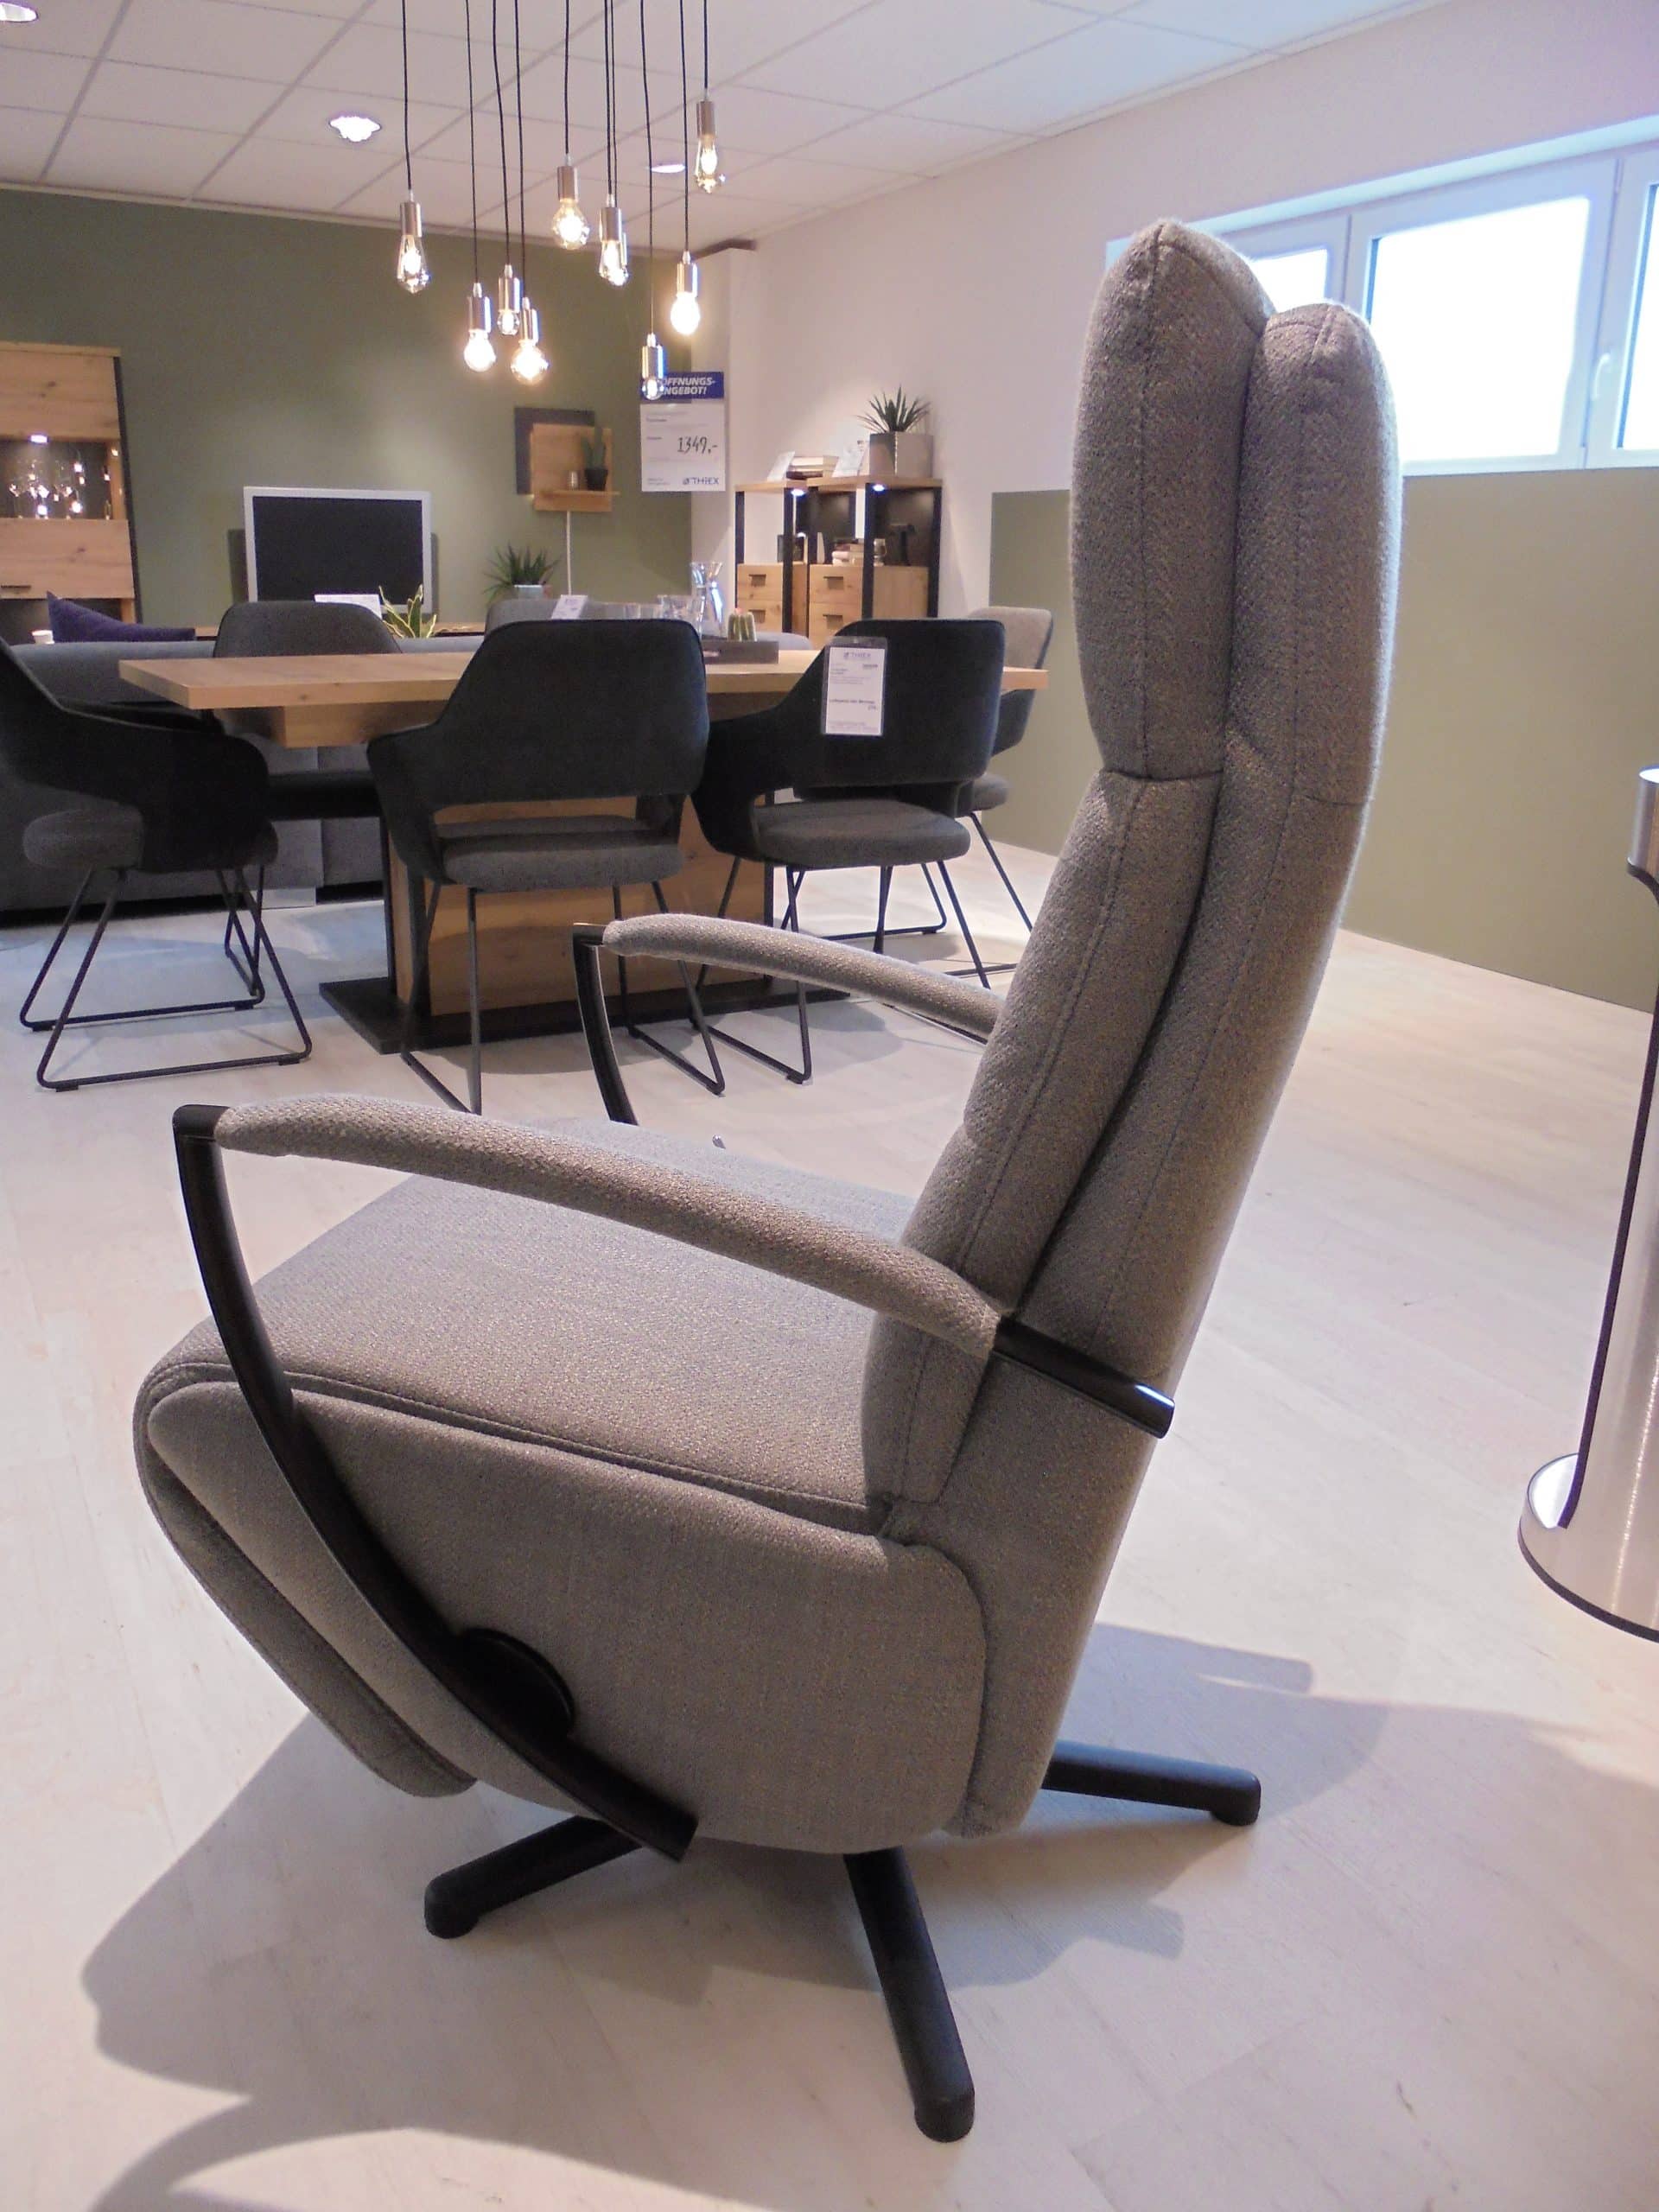 Der Relaxsessel Santa Rosa ist mit einer hochwertigen Schaum-Polsterung ausgestattet, die für optimalen Sitzkomfort sorgt. Die Gasdruck-Funktion ermöglicht es Ihnen, die Rückenlehne und Fußstütze individuell einzustellen und somit Ihre Lieblingsposition zum Relaxen zu finden. Und das Beste daran? Der Relaxsessel Santa Rosa ist derzeit im Abverkauf um ganze 32% reduziert! Greifen Sie jetzt zu und sichern Sie sich diesen hochwertigen Sessel zu einem unschlagbaren Preis. Besuchen Sie das Möbelhaus Thiex Geichlingen und überzeugen Sie sich selbst von der Qualität und dem Komfort des Relaxsessels Santa Rosa. Verpassen Sie nicht diese Gelegenheit, Ihr Wohnzimmer mit diesem exklusiven Möbelstück aufzuwerten und entspannte Stunden zu genießen.